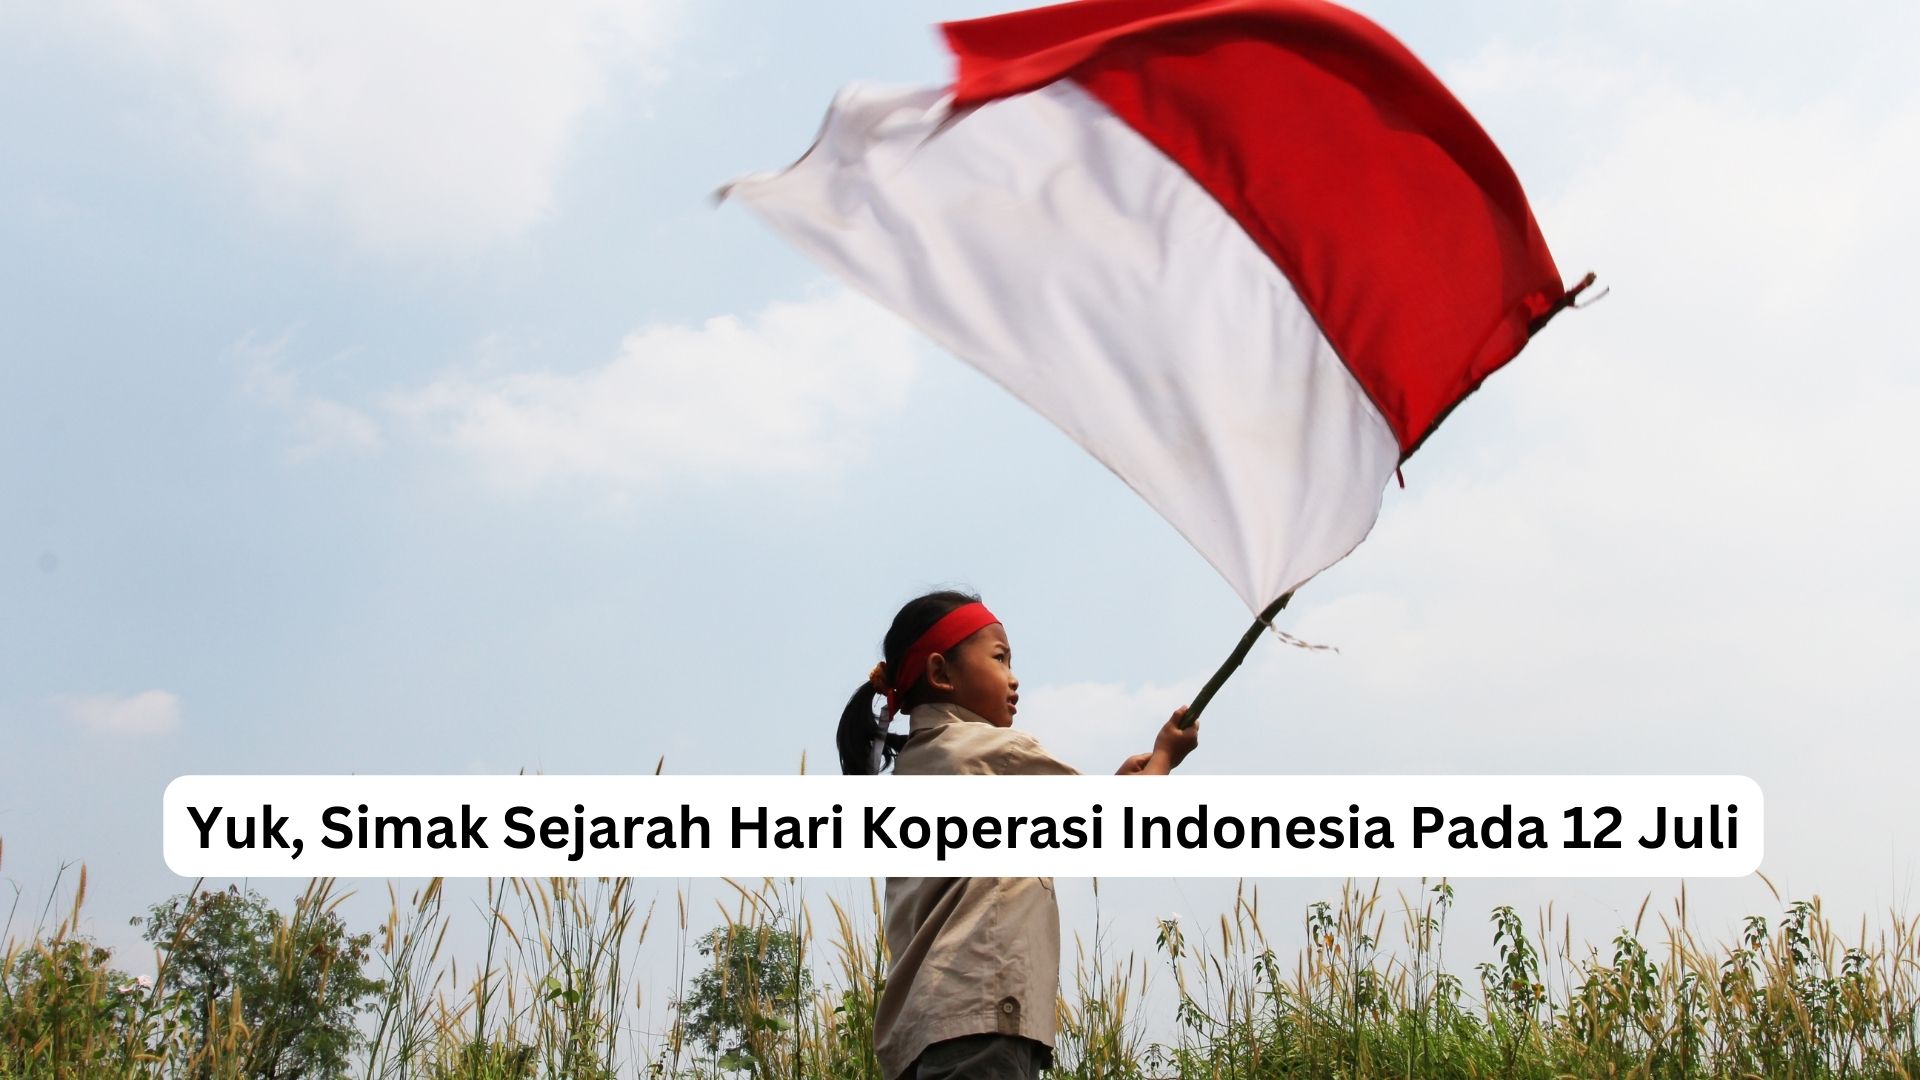 You are currently viewing Yuk, Simak Sejarah Hari Koperasi Indonesia Pada 12 Juli